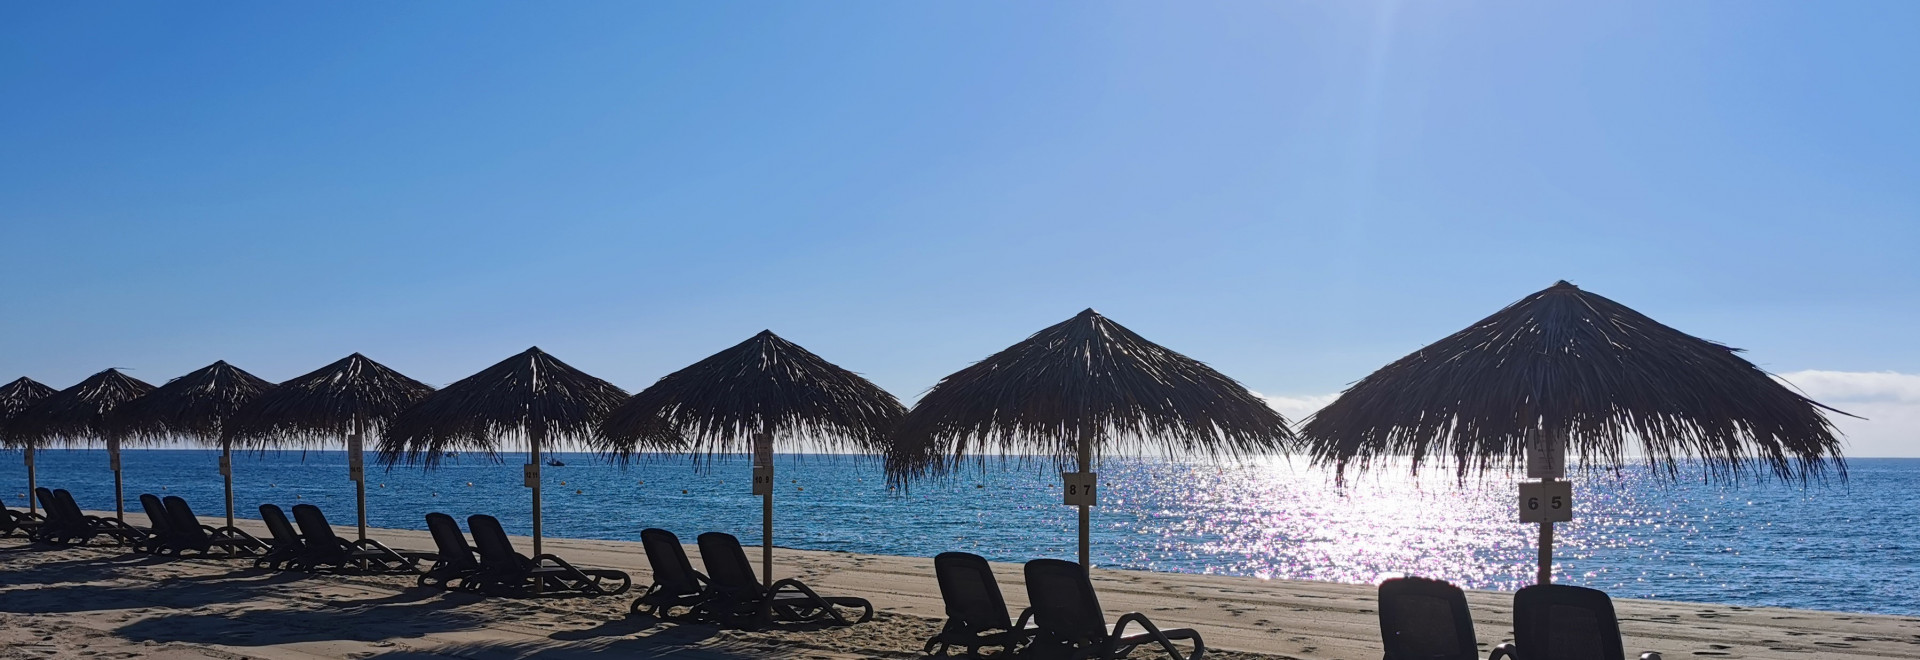 Liegestühle am Strand auf Korsika